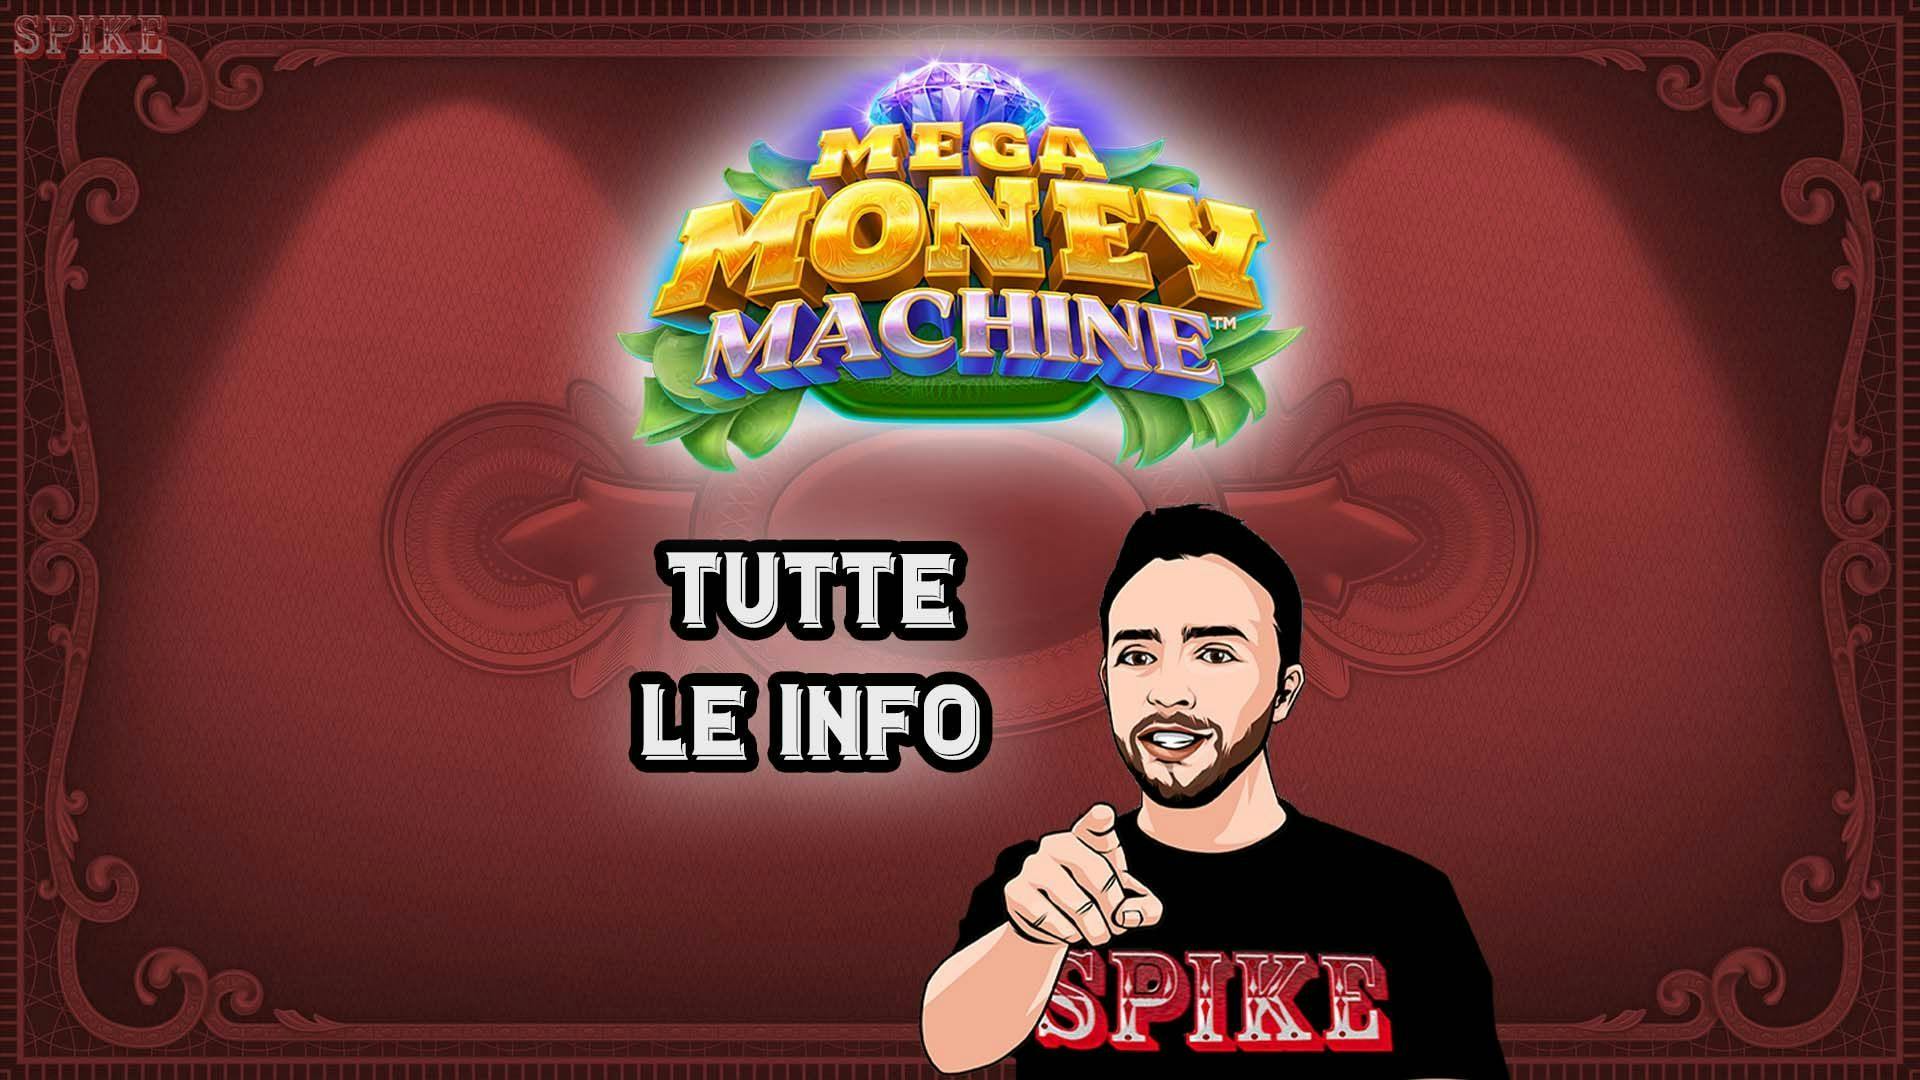 Mega Money Machine Nuova Slot